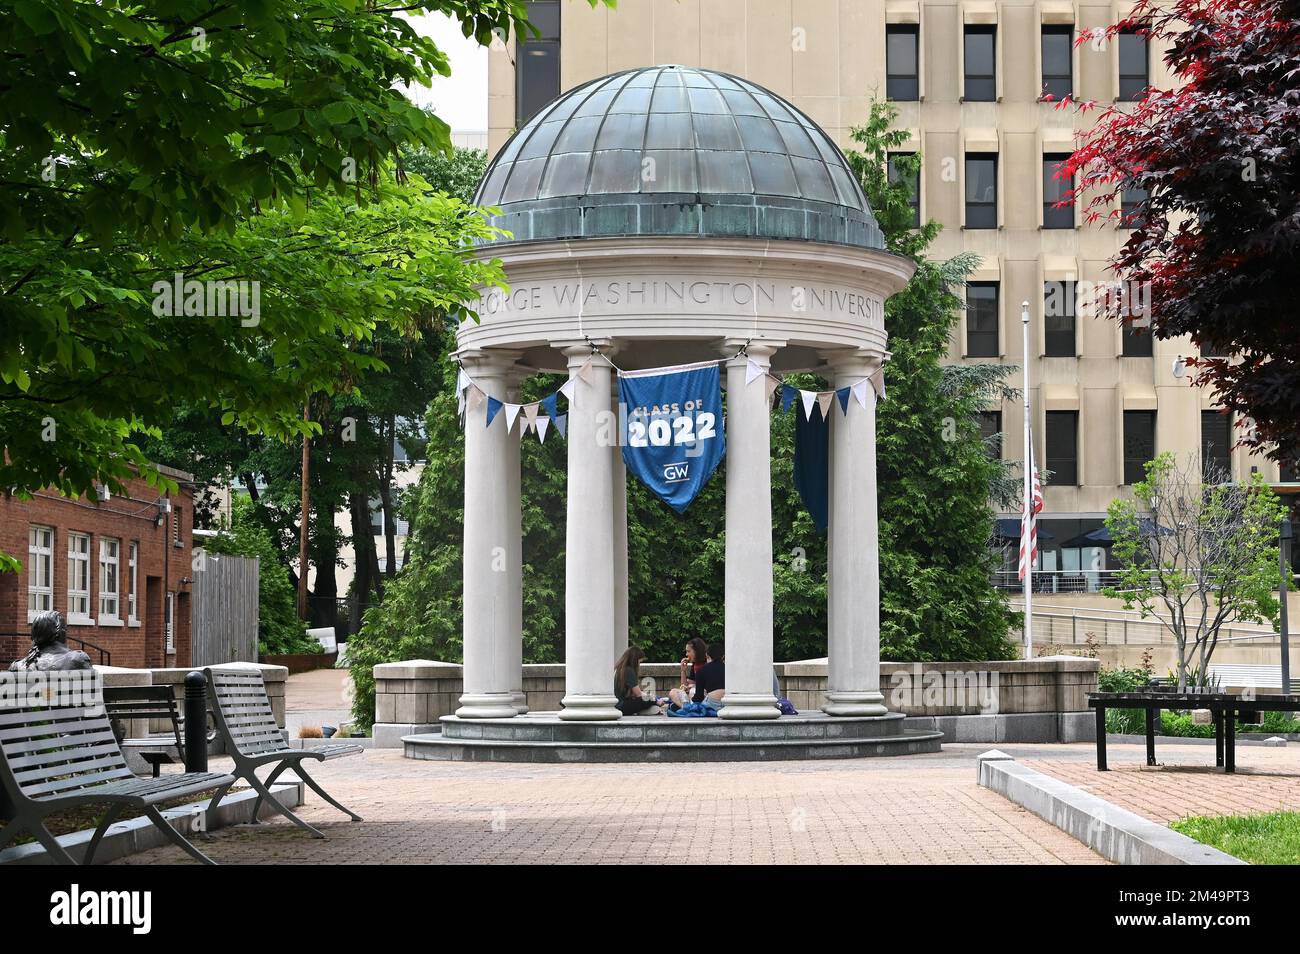 George Washington University Campus, Washington D. C. United States of America Stock Photo